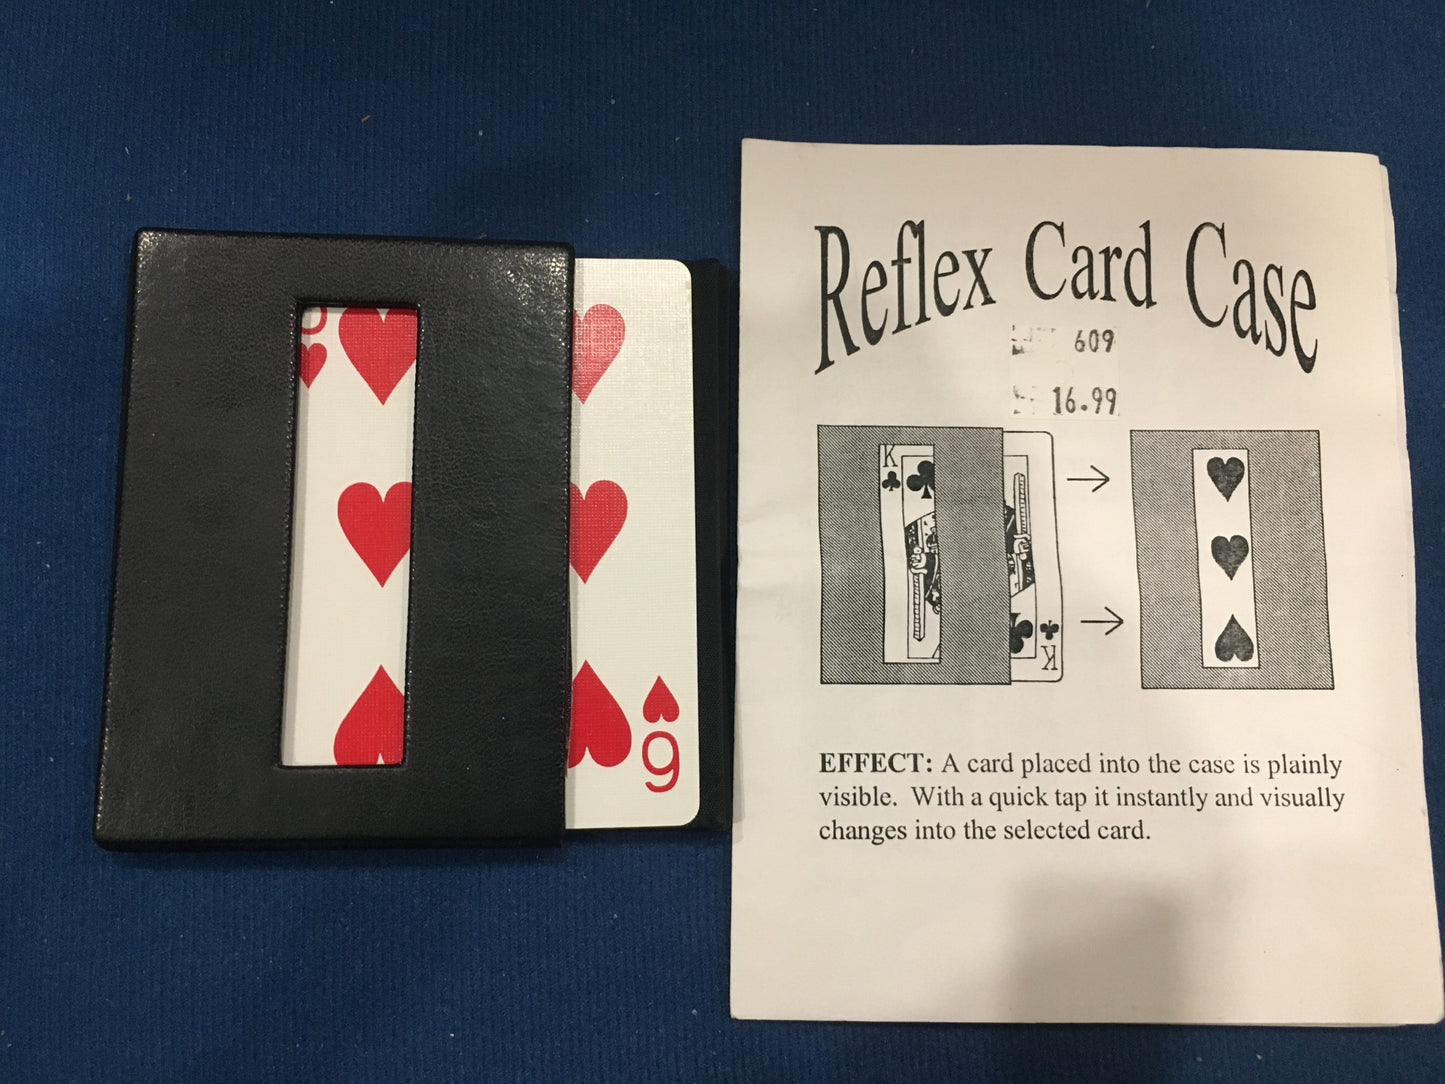 Reflex Card Case by Fun Inc., used